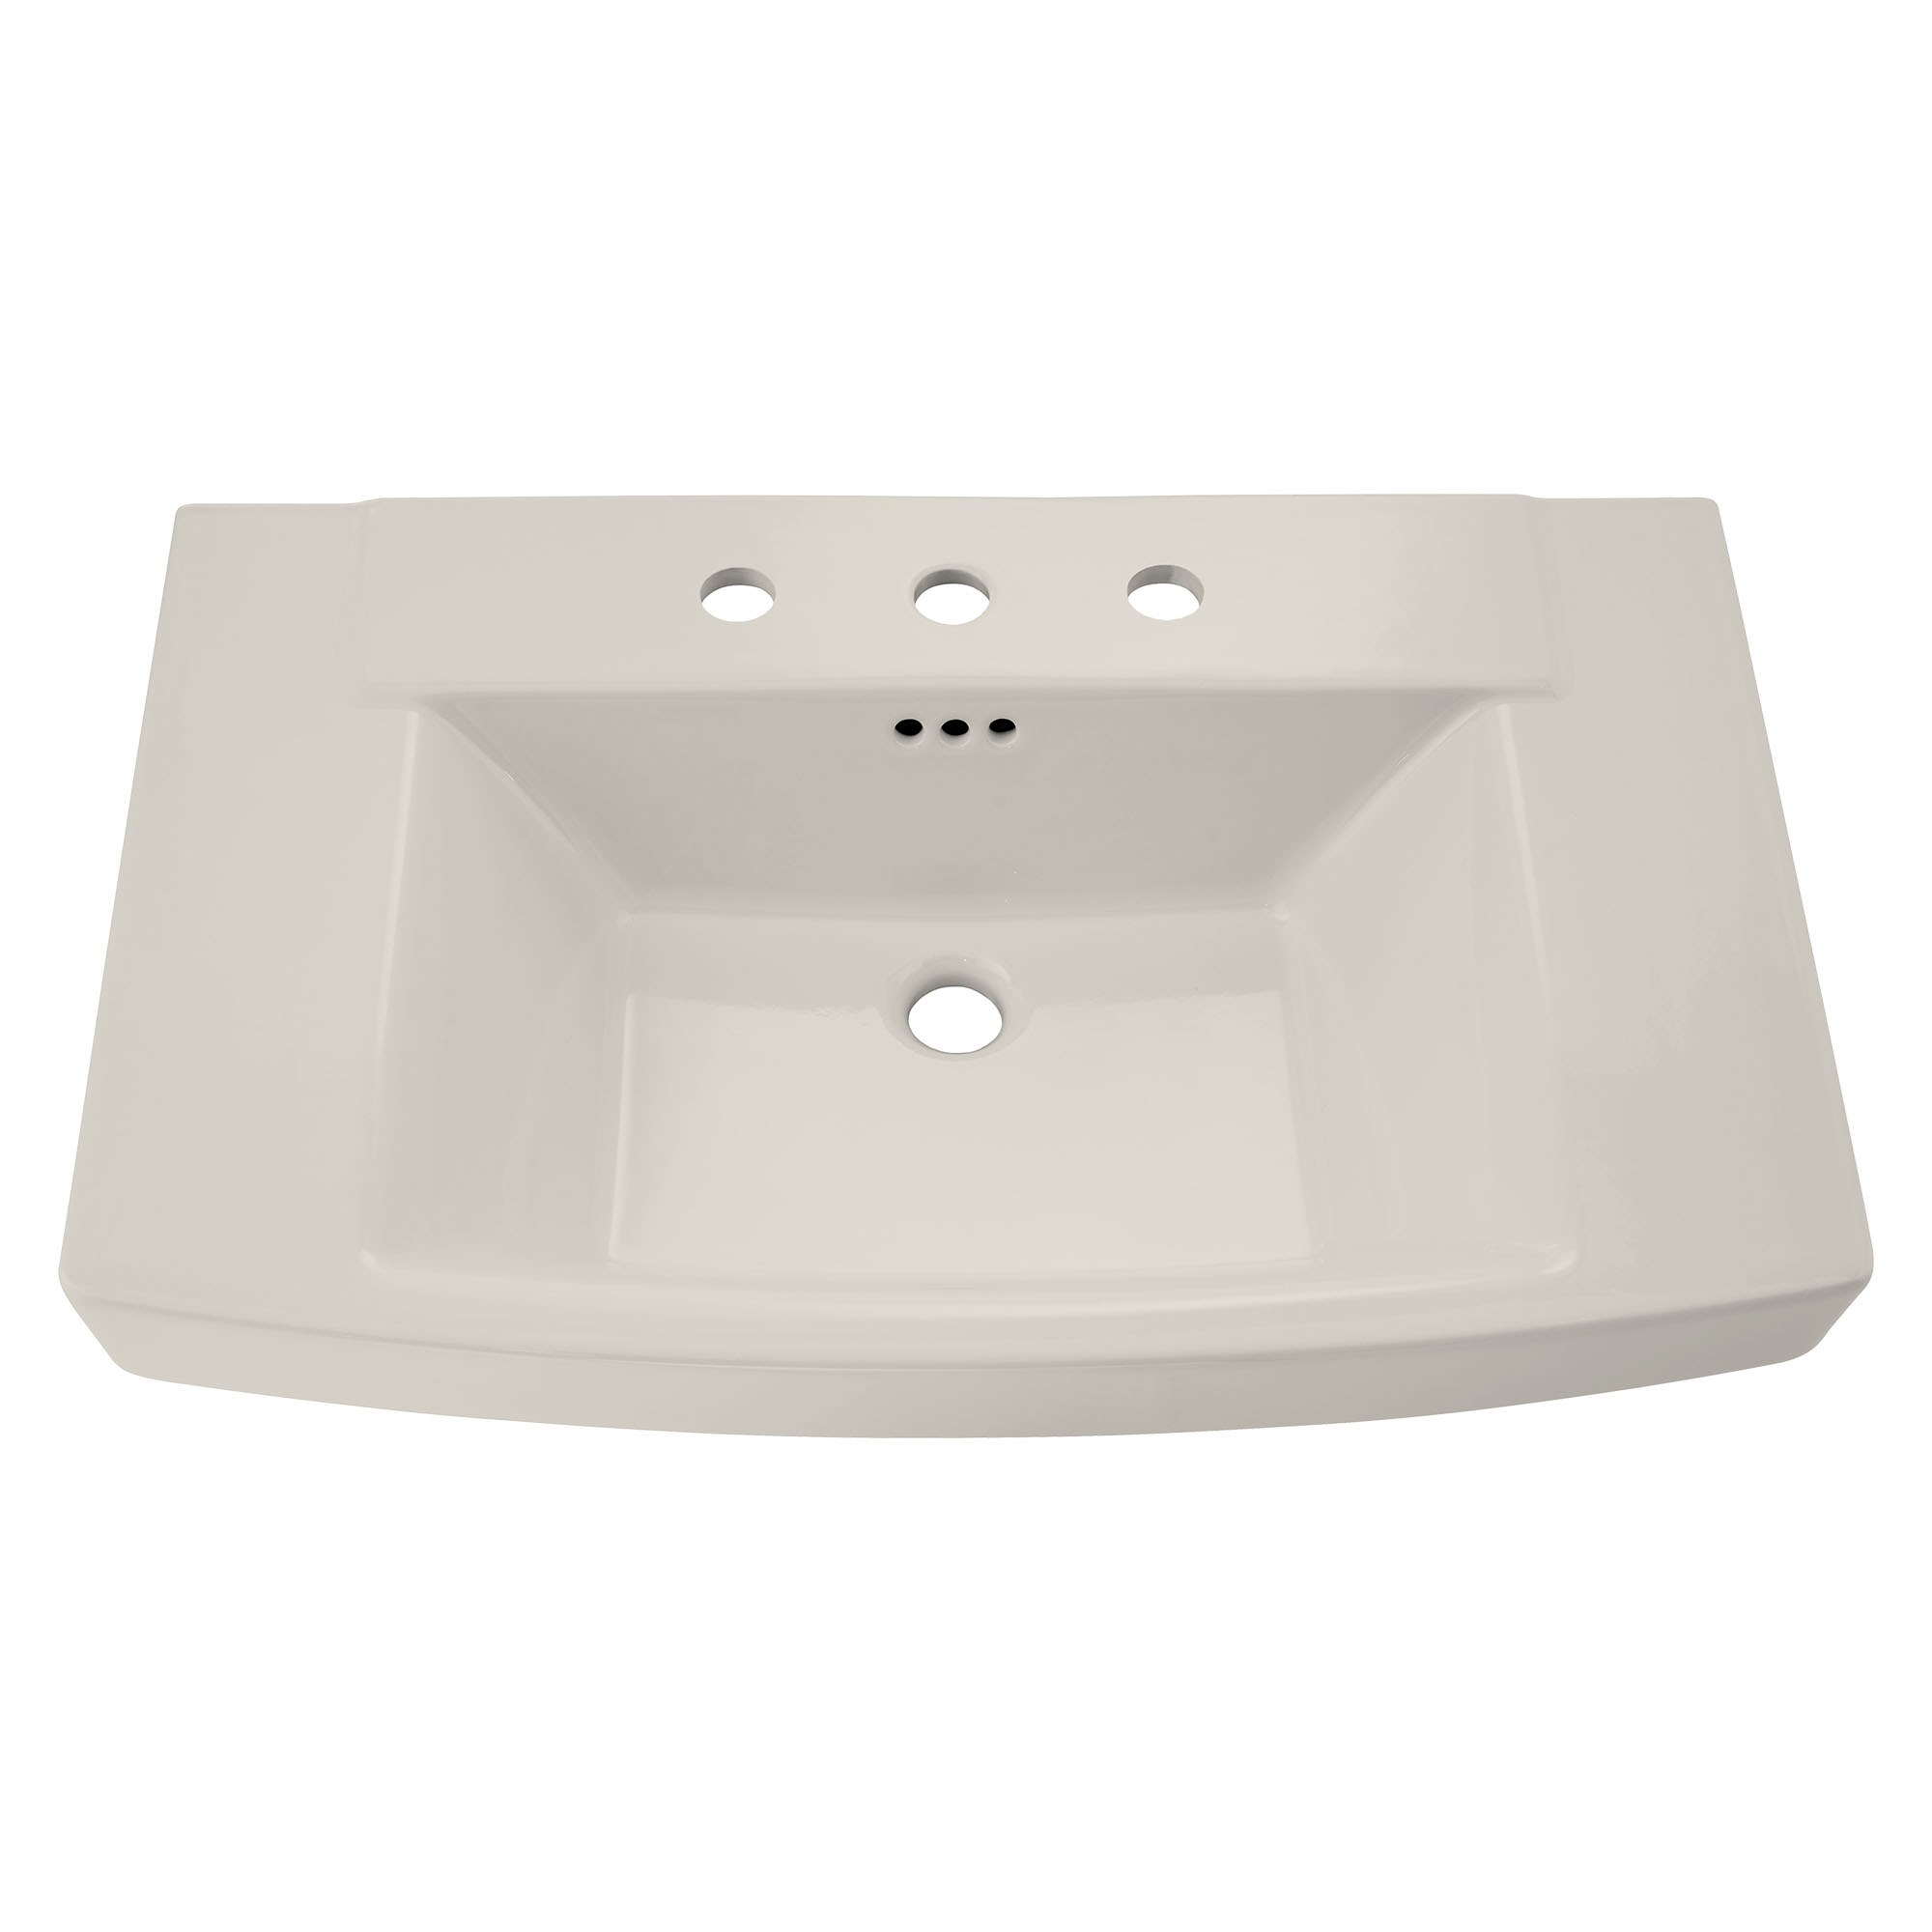 Townsend™ 8-Inch Widespread Pedestal Sink Top